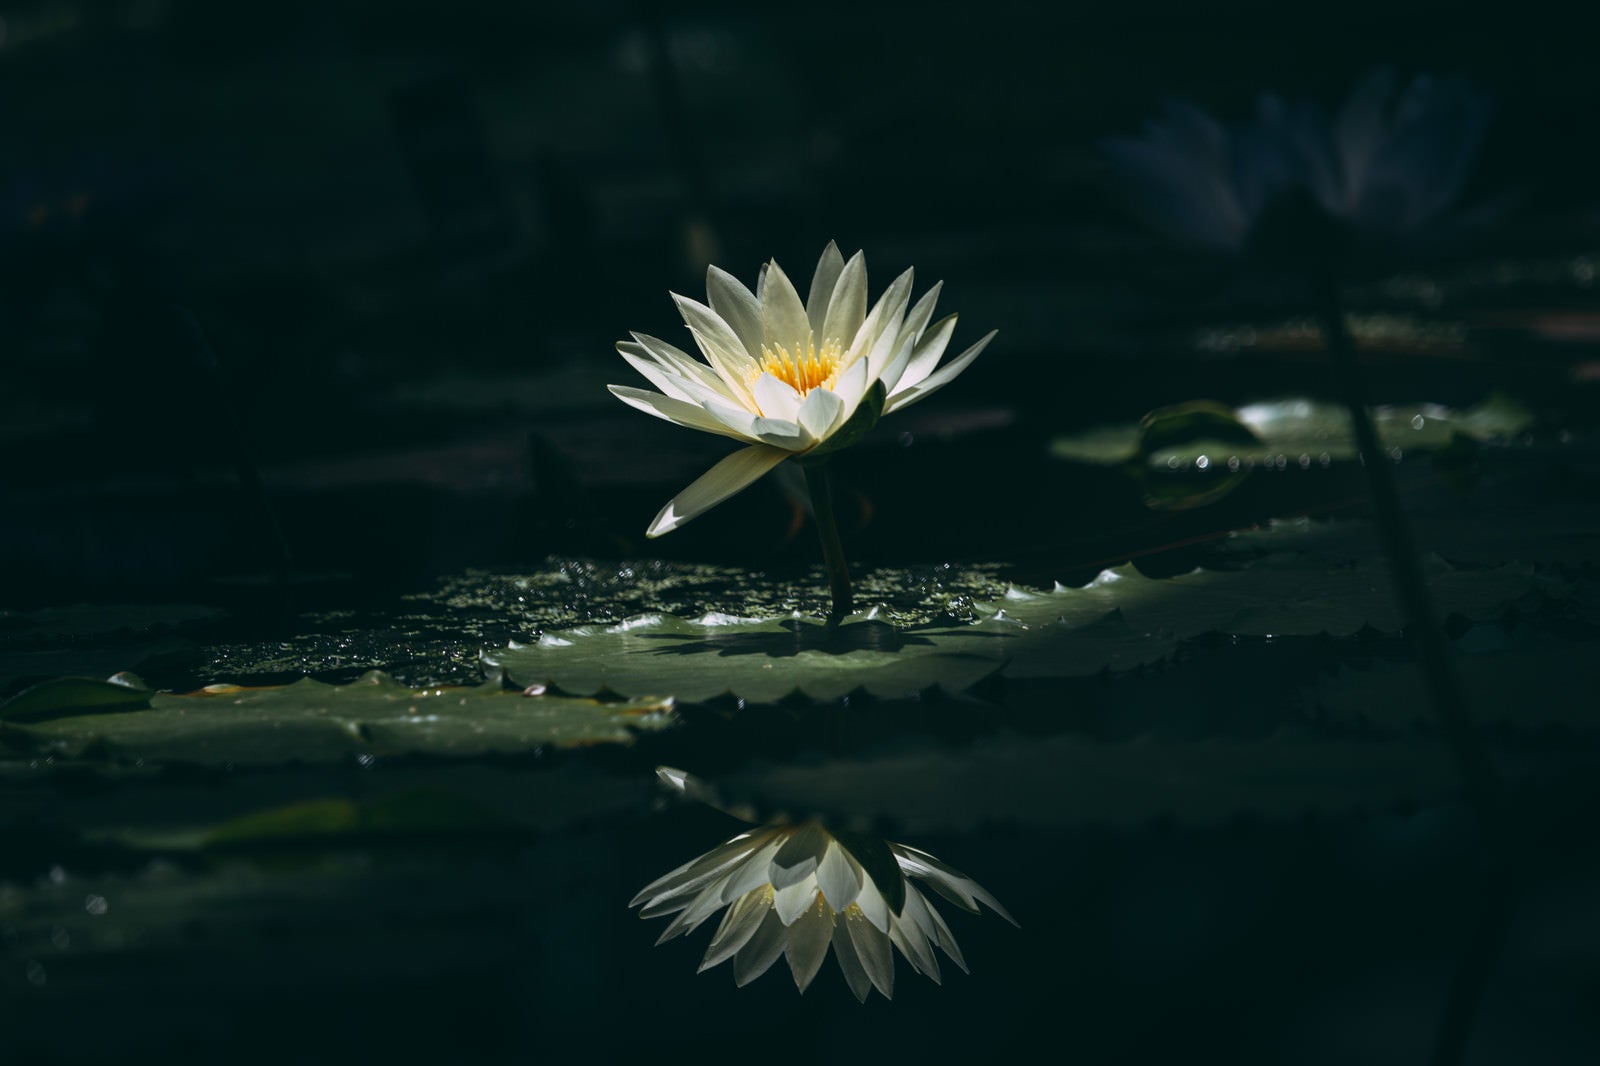 「一輪だけ光る白い睡蓮」の写真